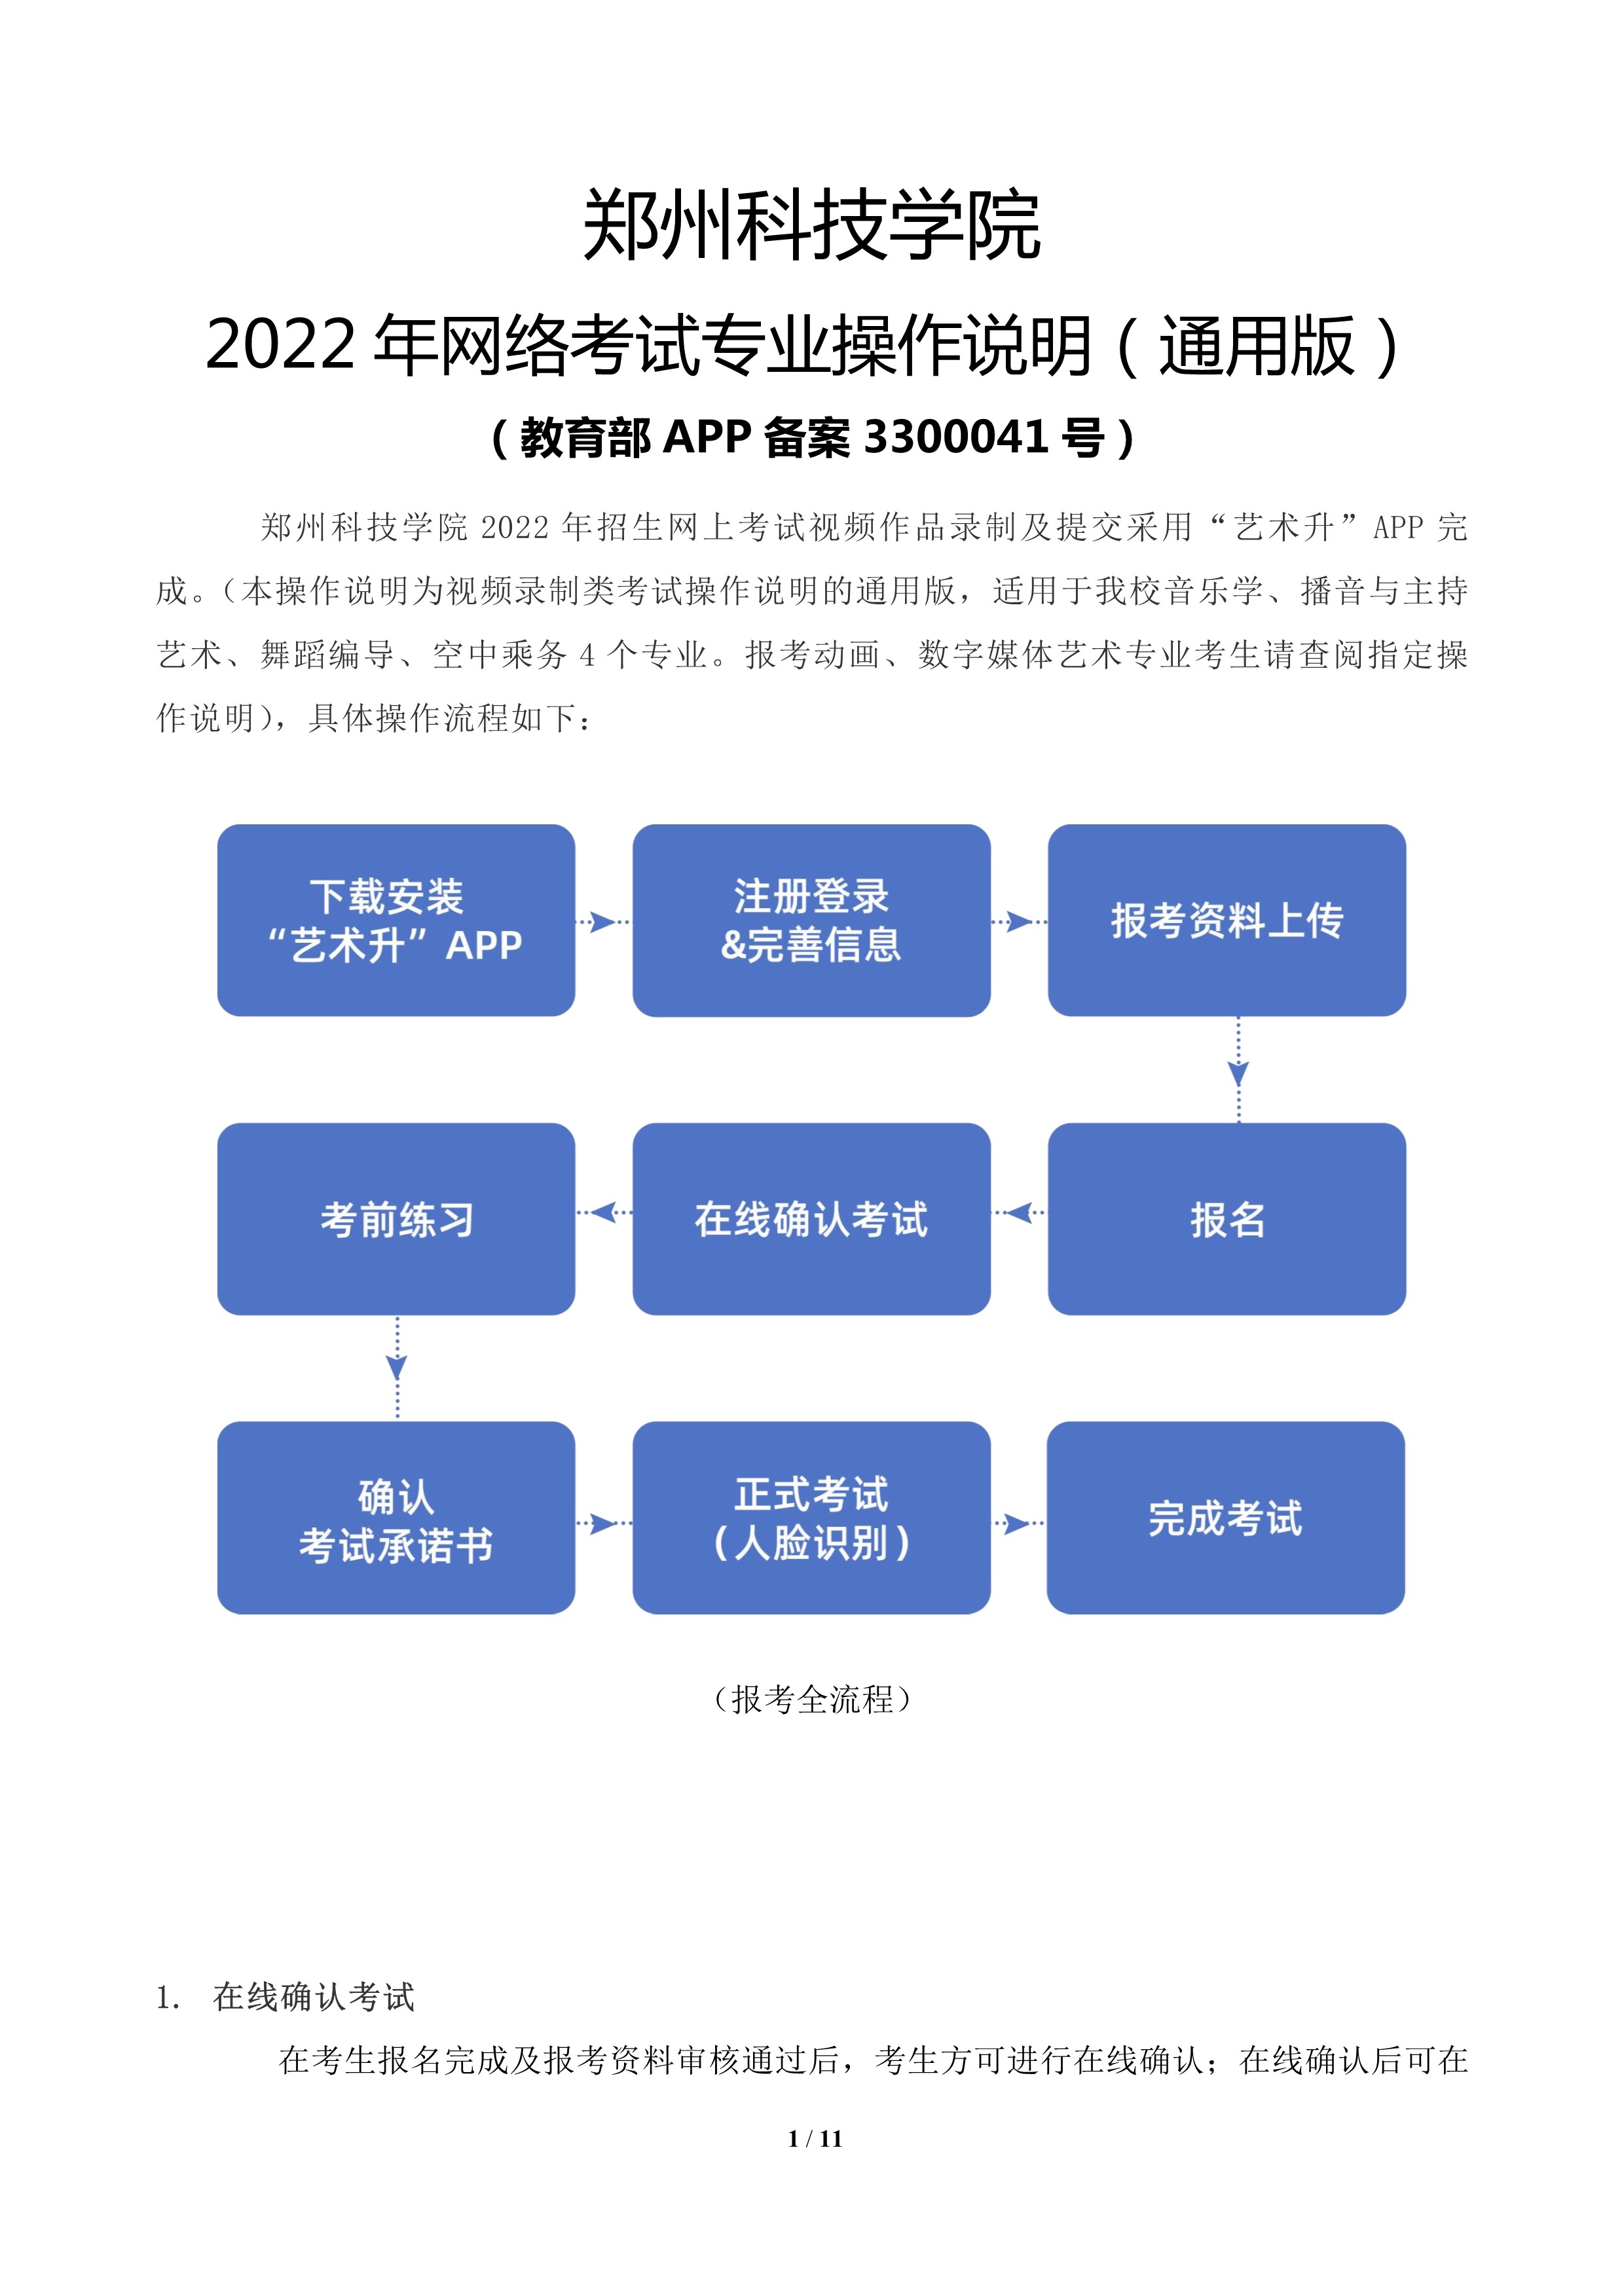 郑州科技学院2022年网络考试专业操作说明（通用版）_1.jpg